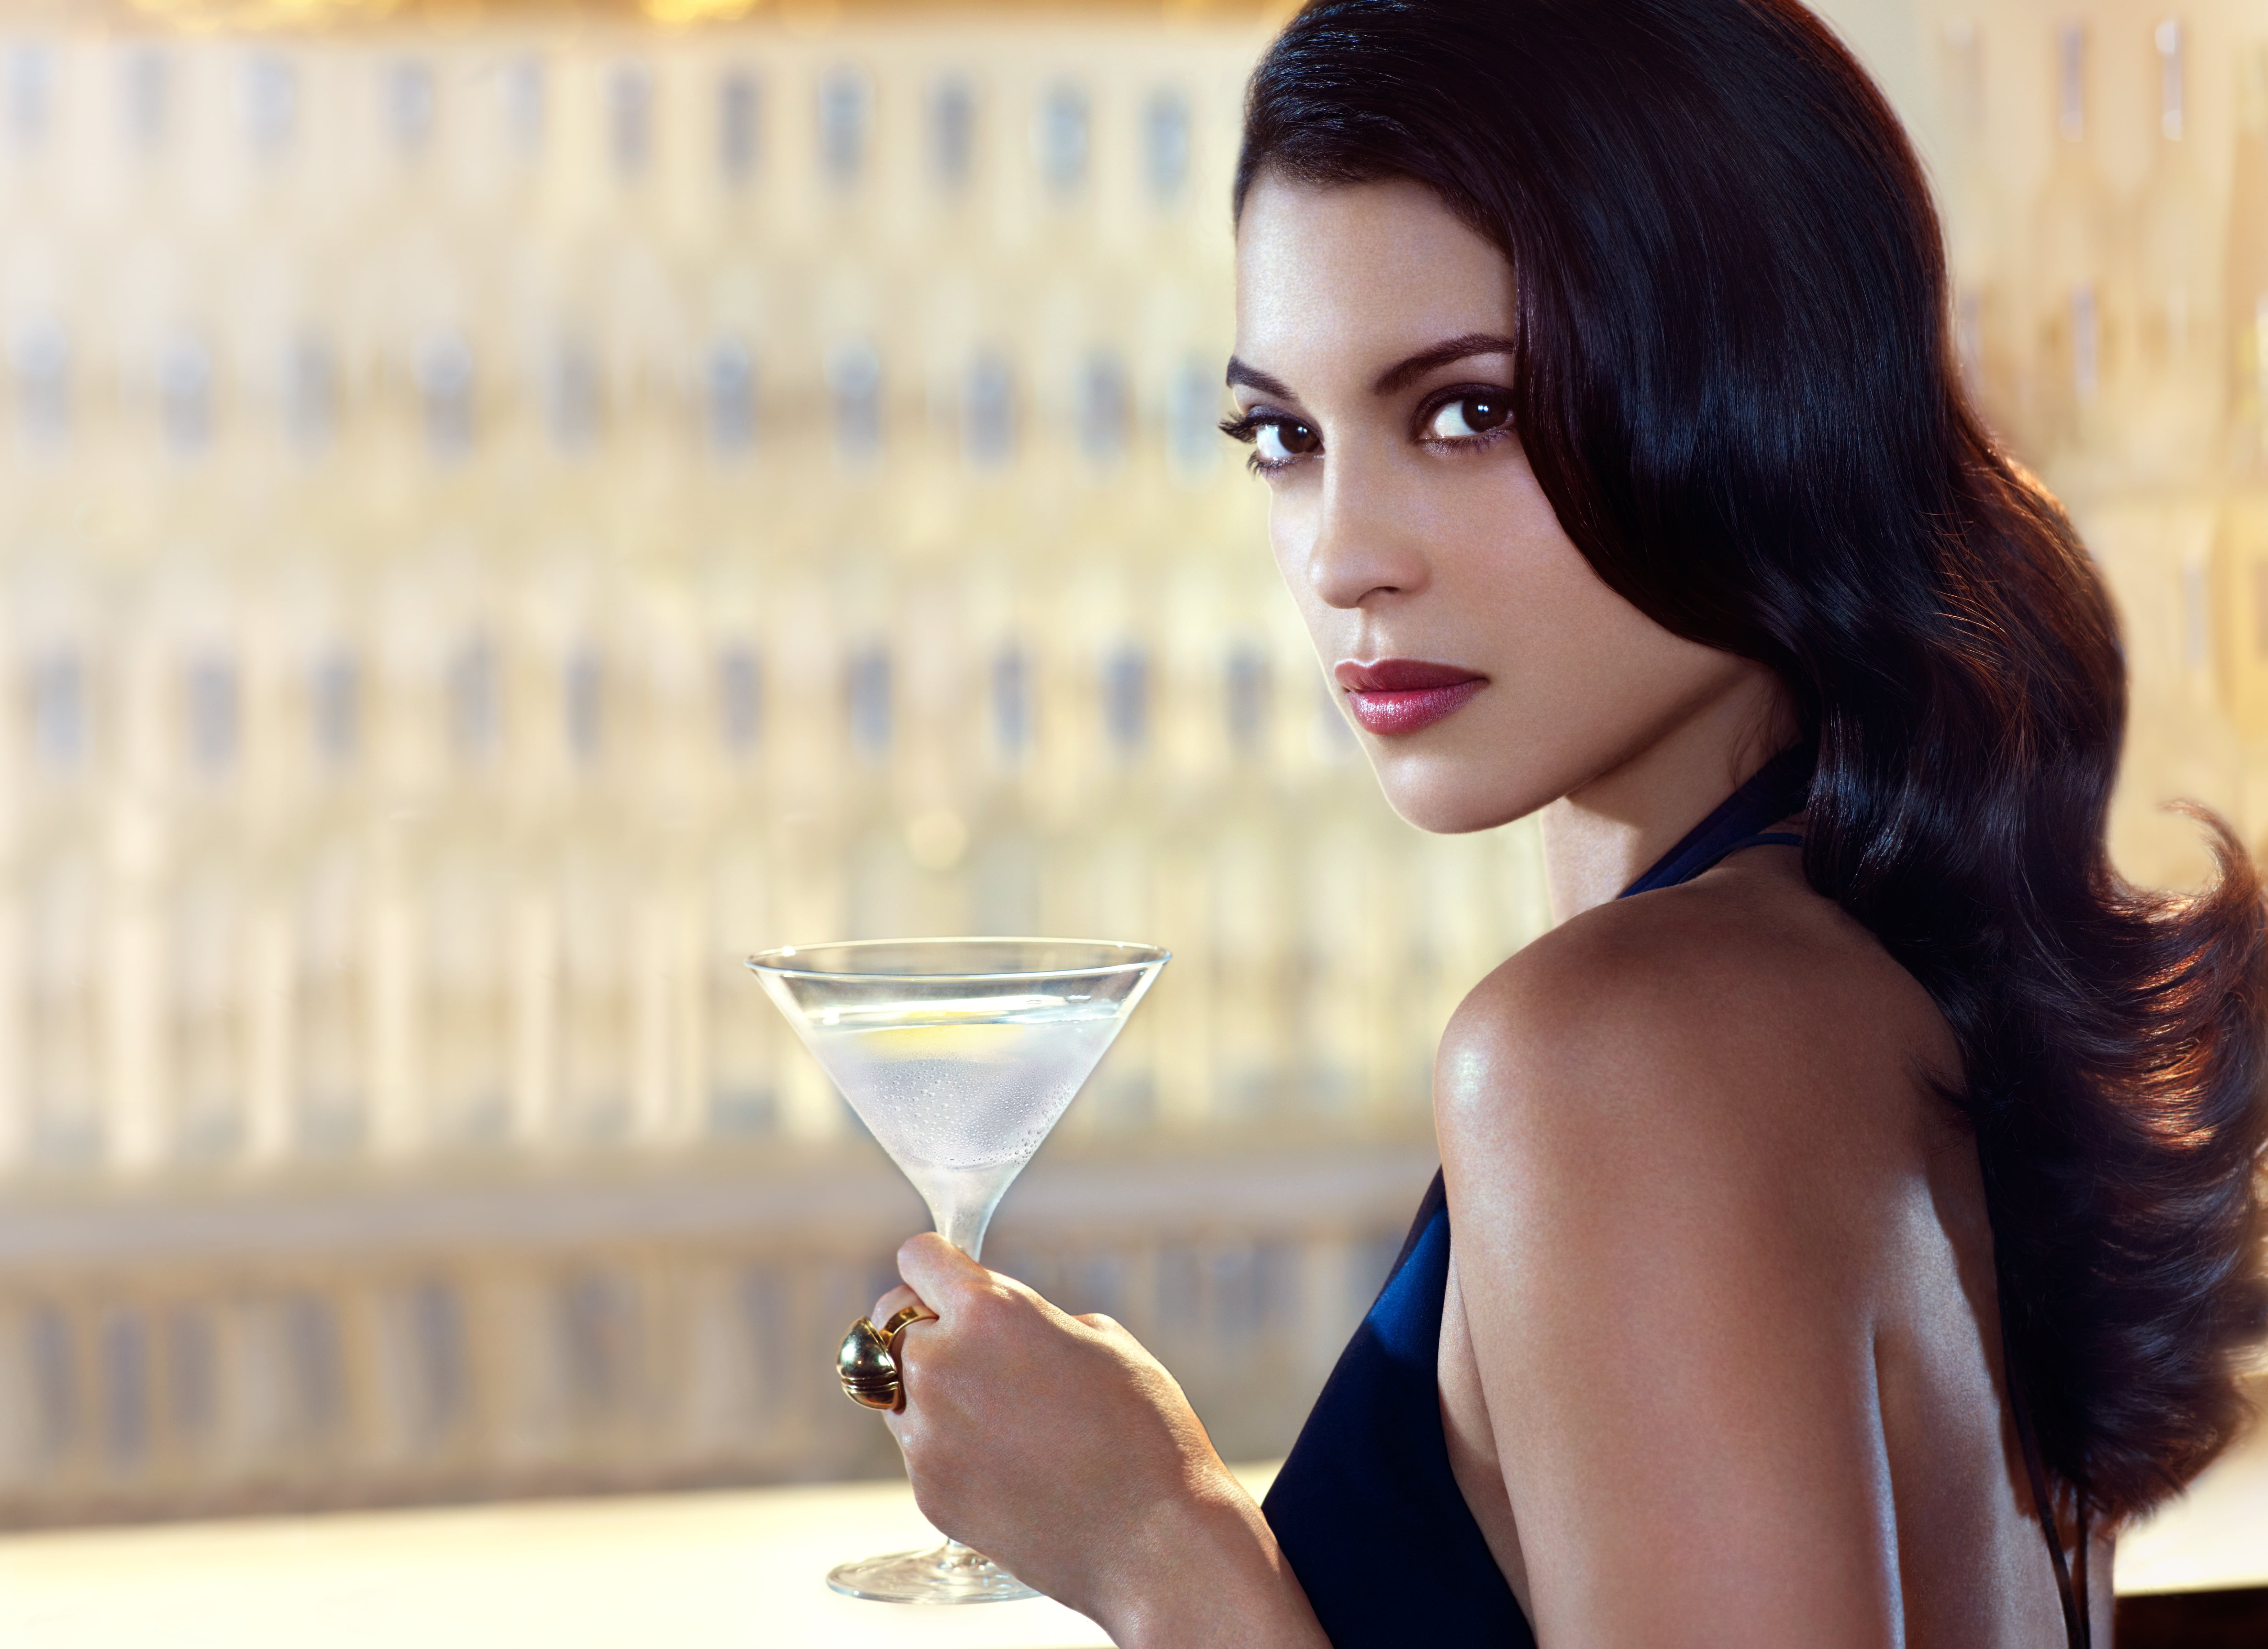 Belvedere Vodka announces Bond partnership